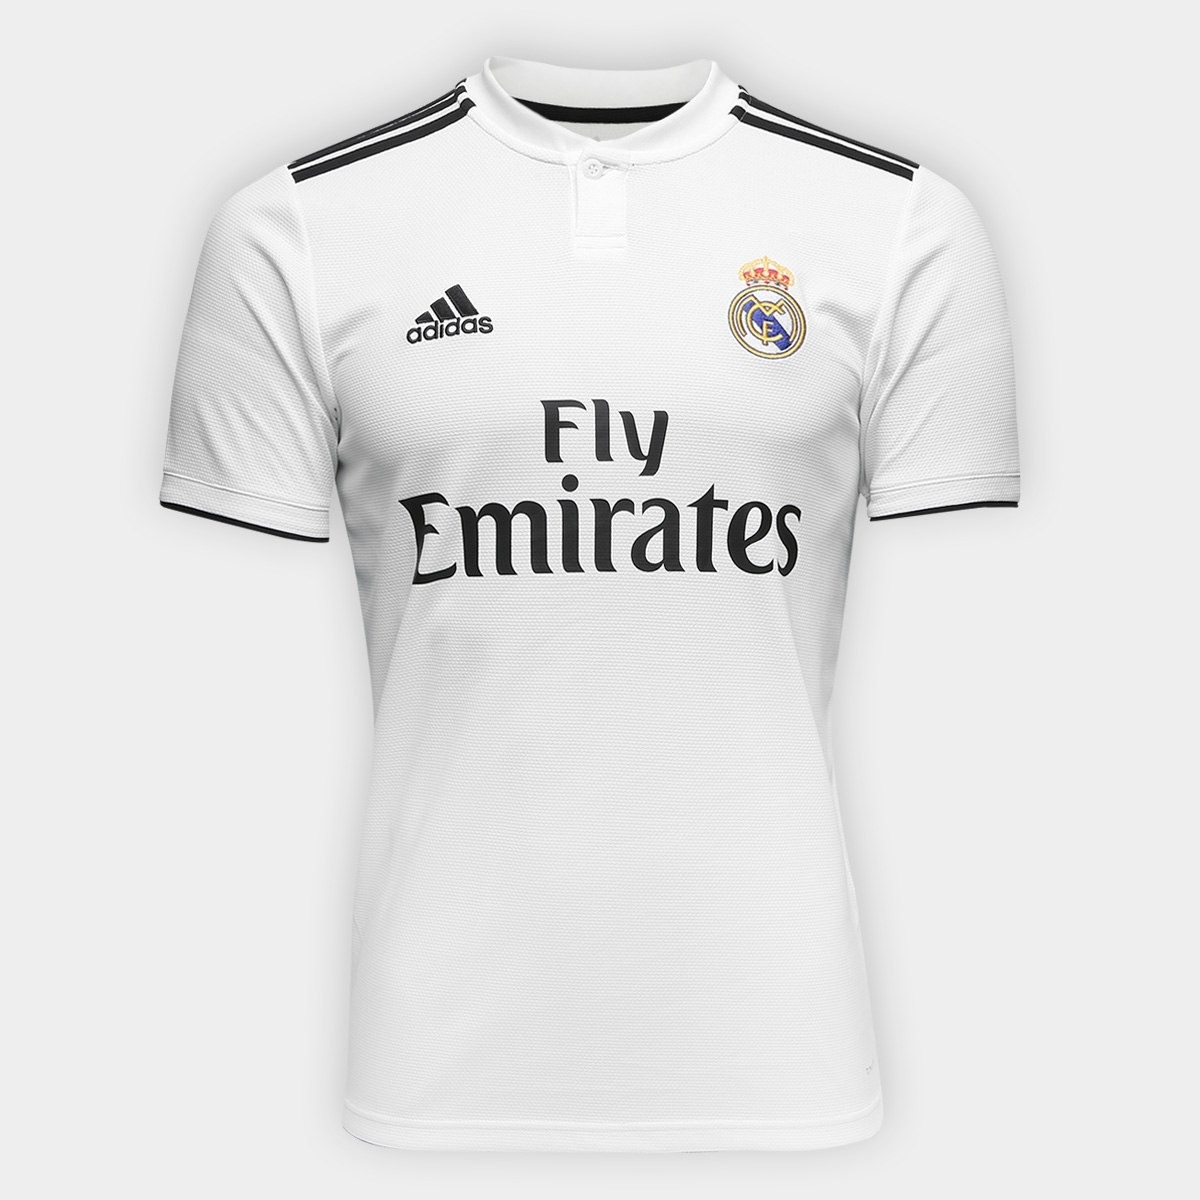 Camisa Real Madrid adidas Home Original Oficial 2018 2019 ...